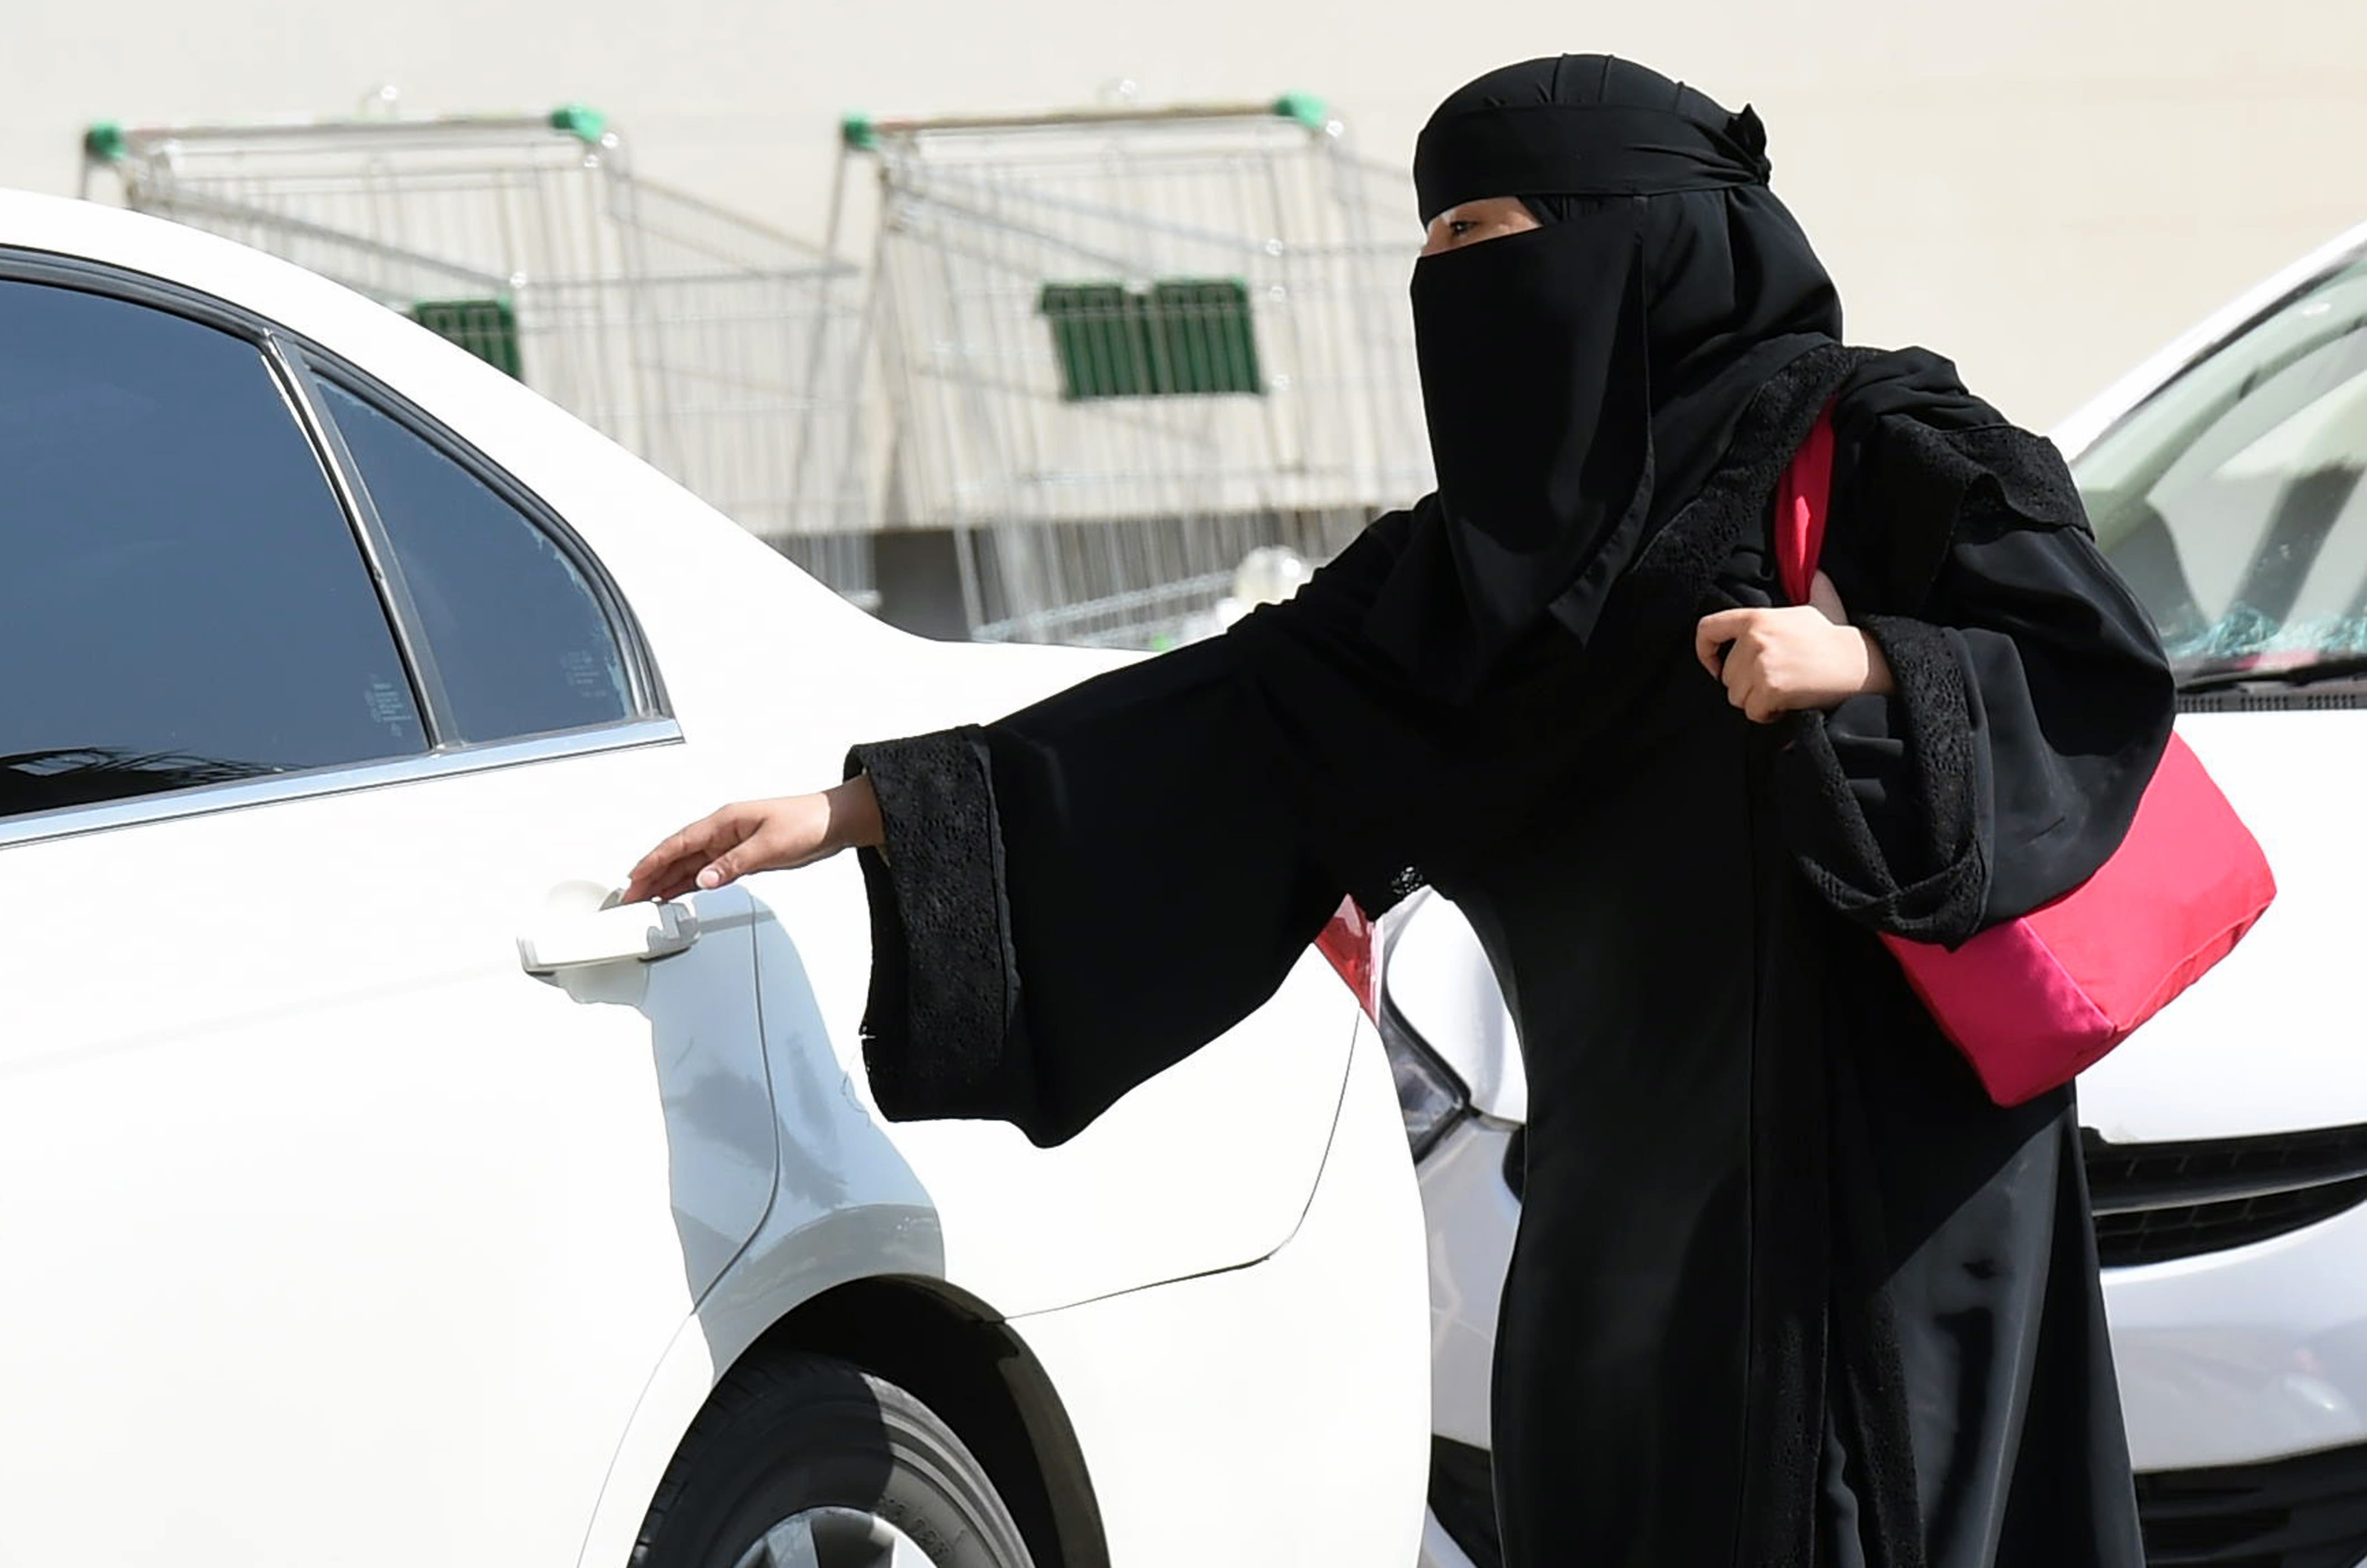 Saubia Arbia Xxx - Spokeswoman defends progress in Saudi Arabia | CNN